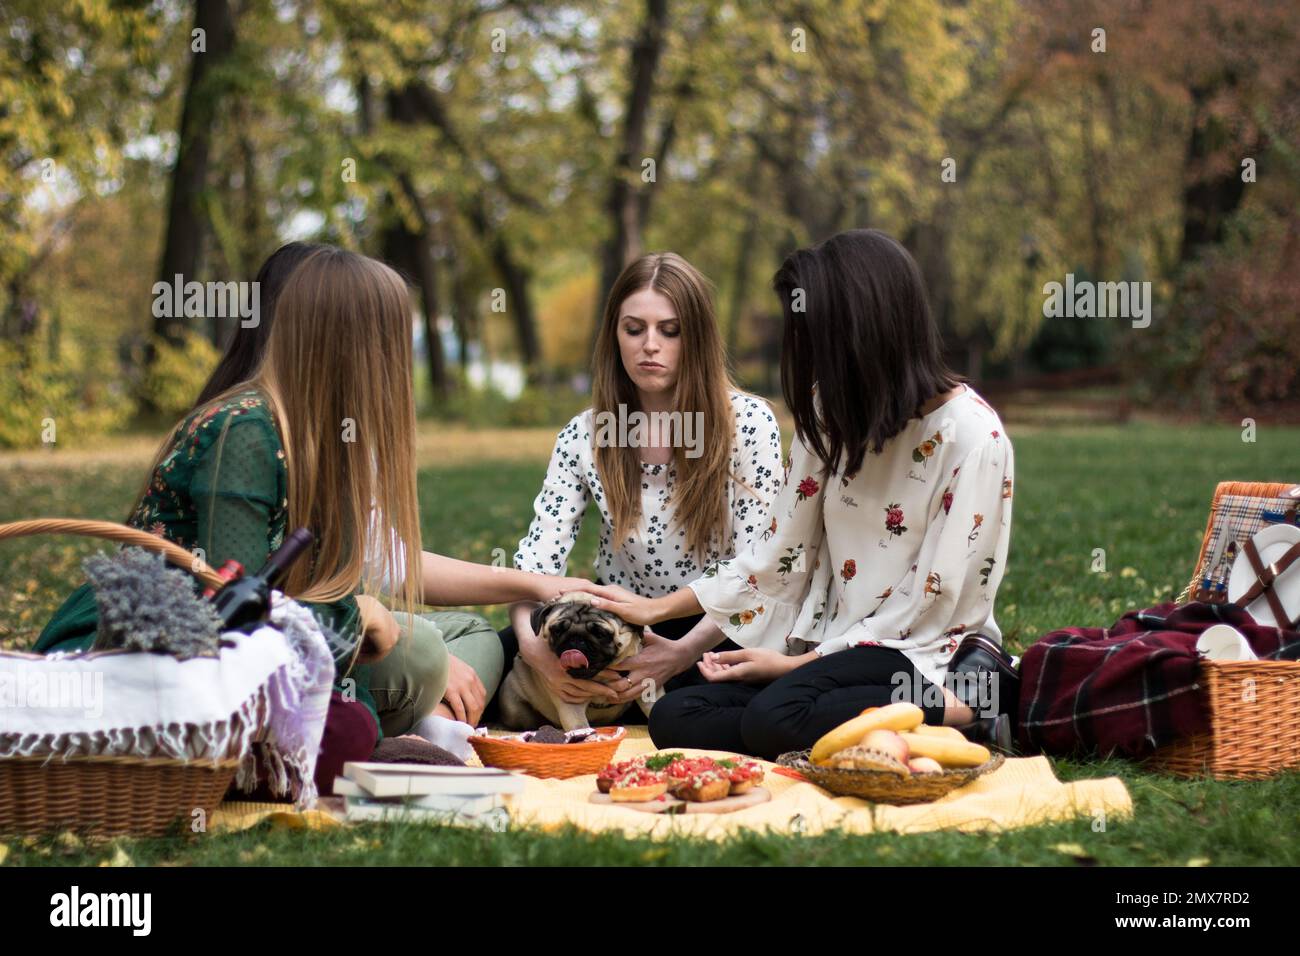 Eine Gruppe von vier jungen Frauen im Park auf einem lustigen Picknick, mit einem süßen Hund. Stockfoto